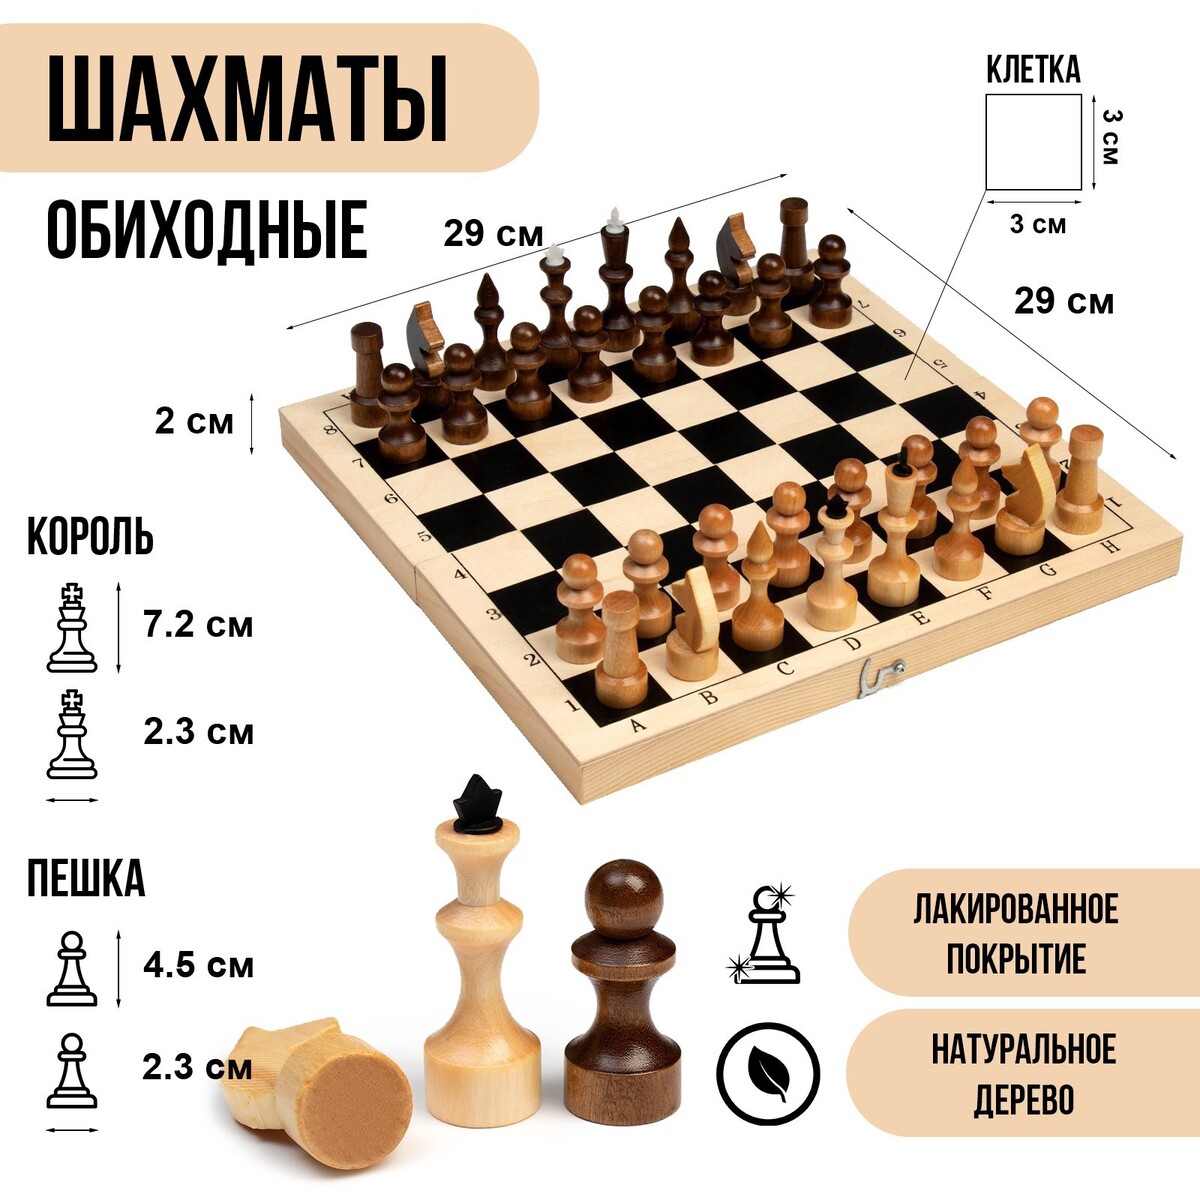 Шахматы деревянные обиходные 29 х 29 см, король h-7.2 см, пешка h-4.5 см шахматы обиходные классика с гофродоской